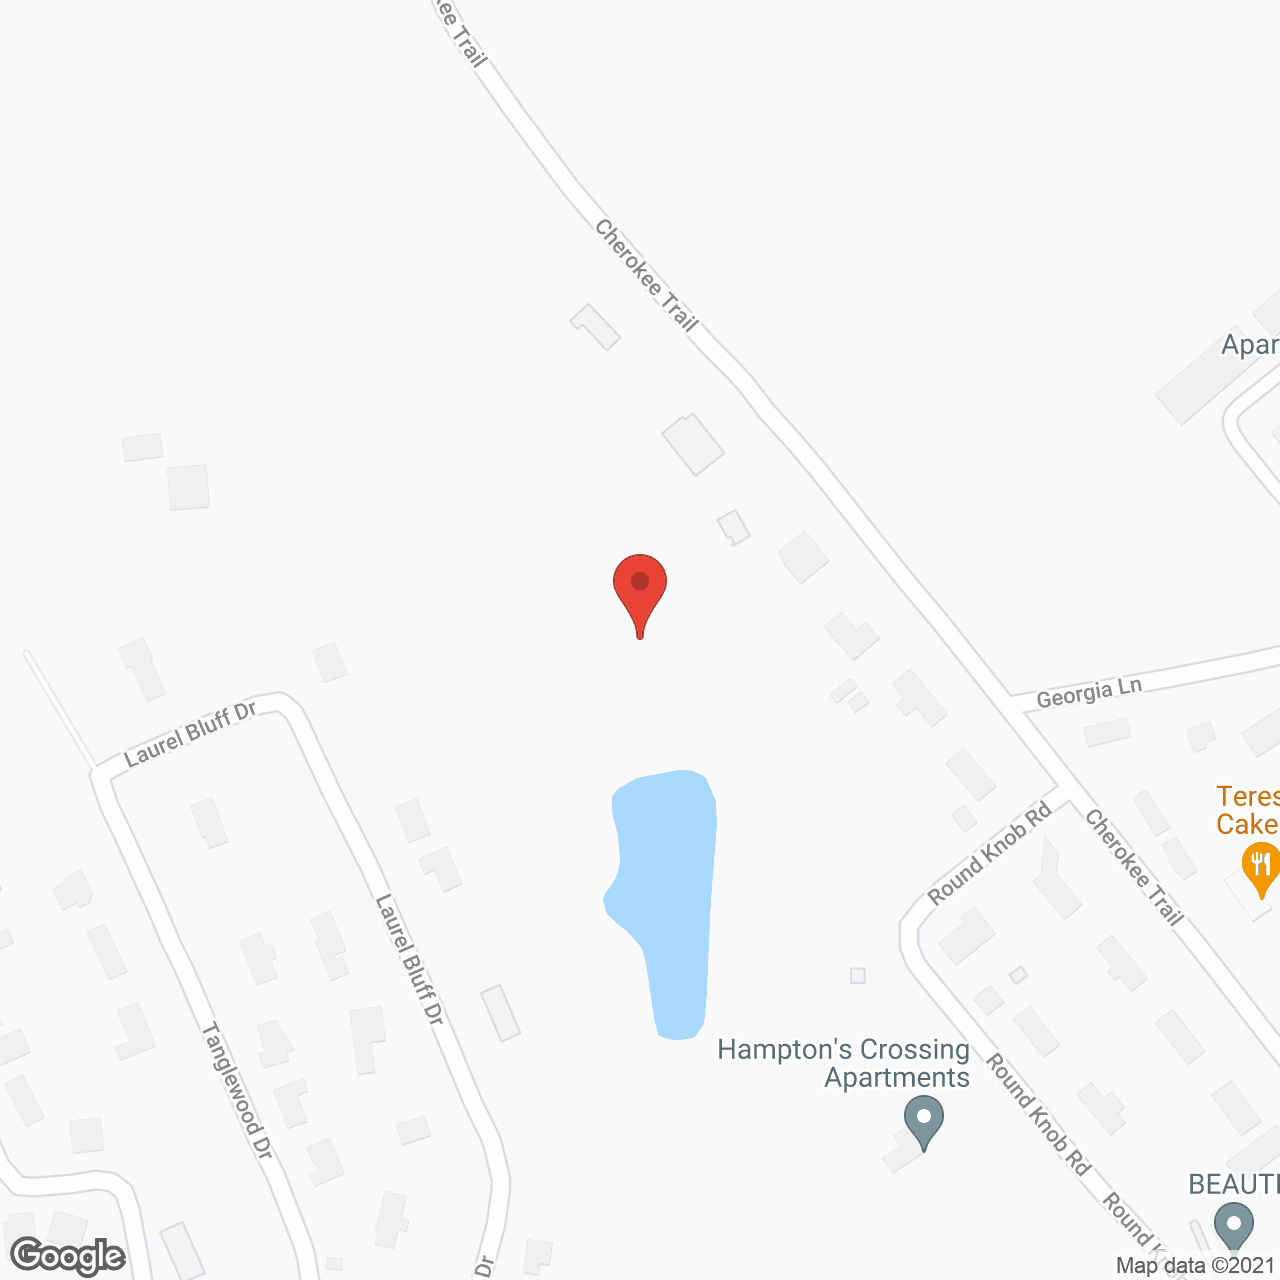 Hamptons Crossing in google map